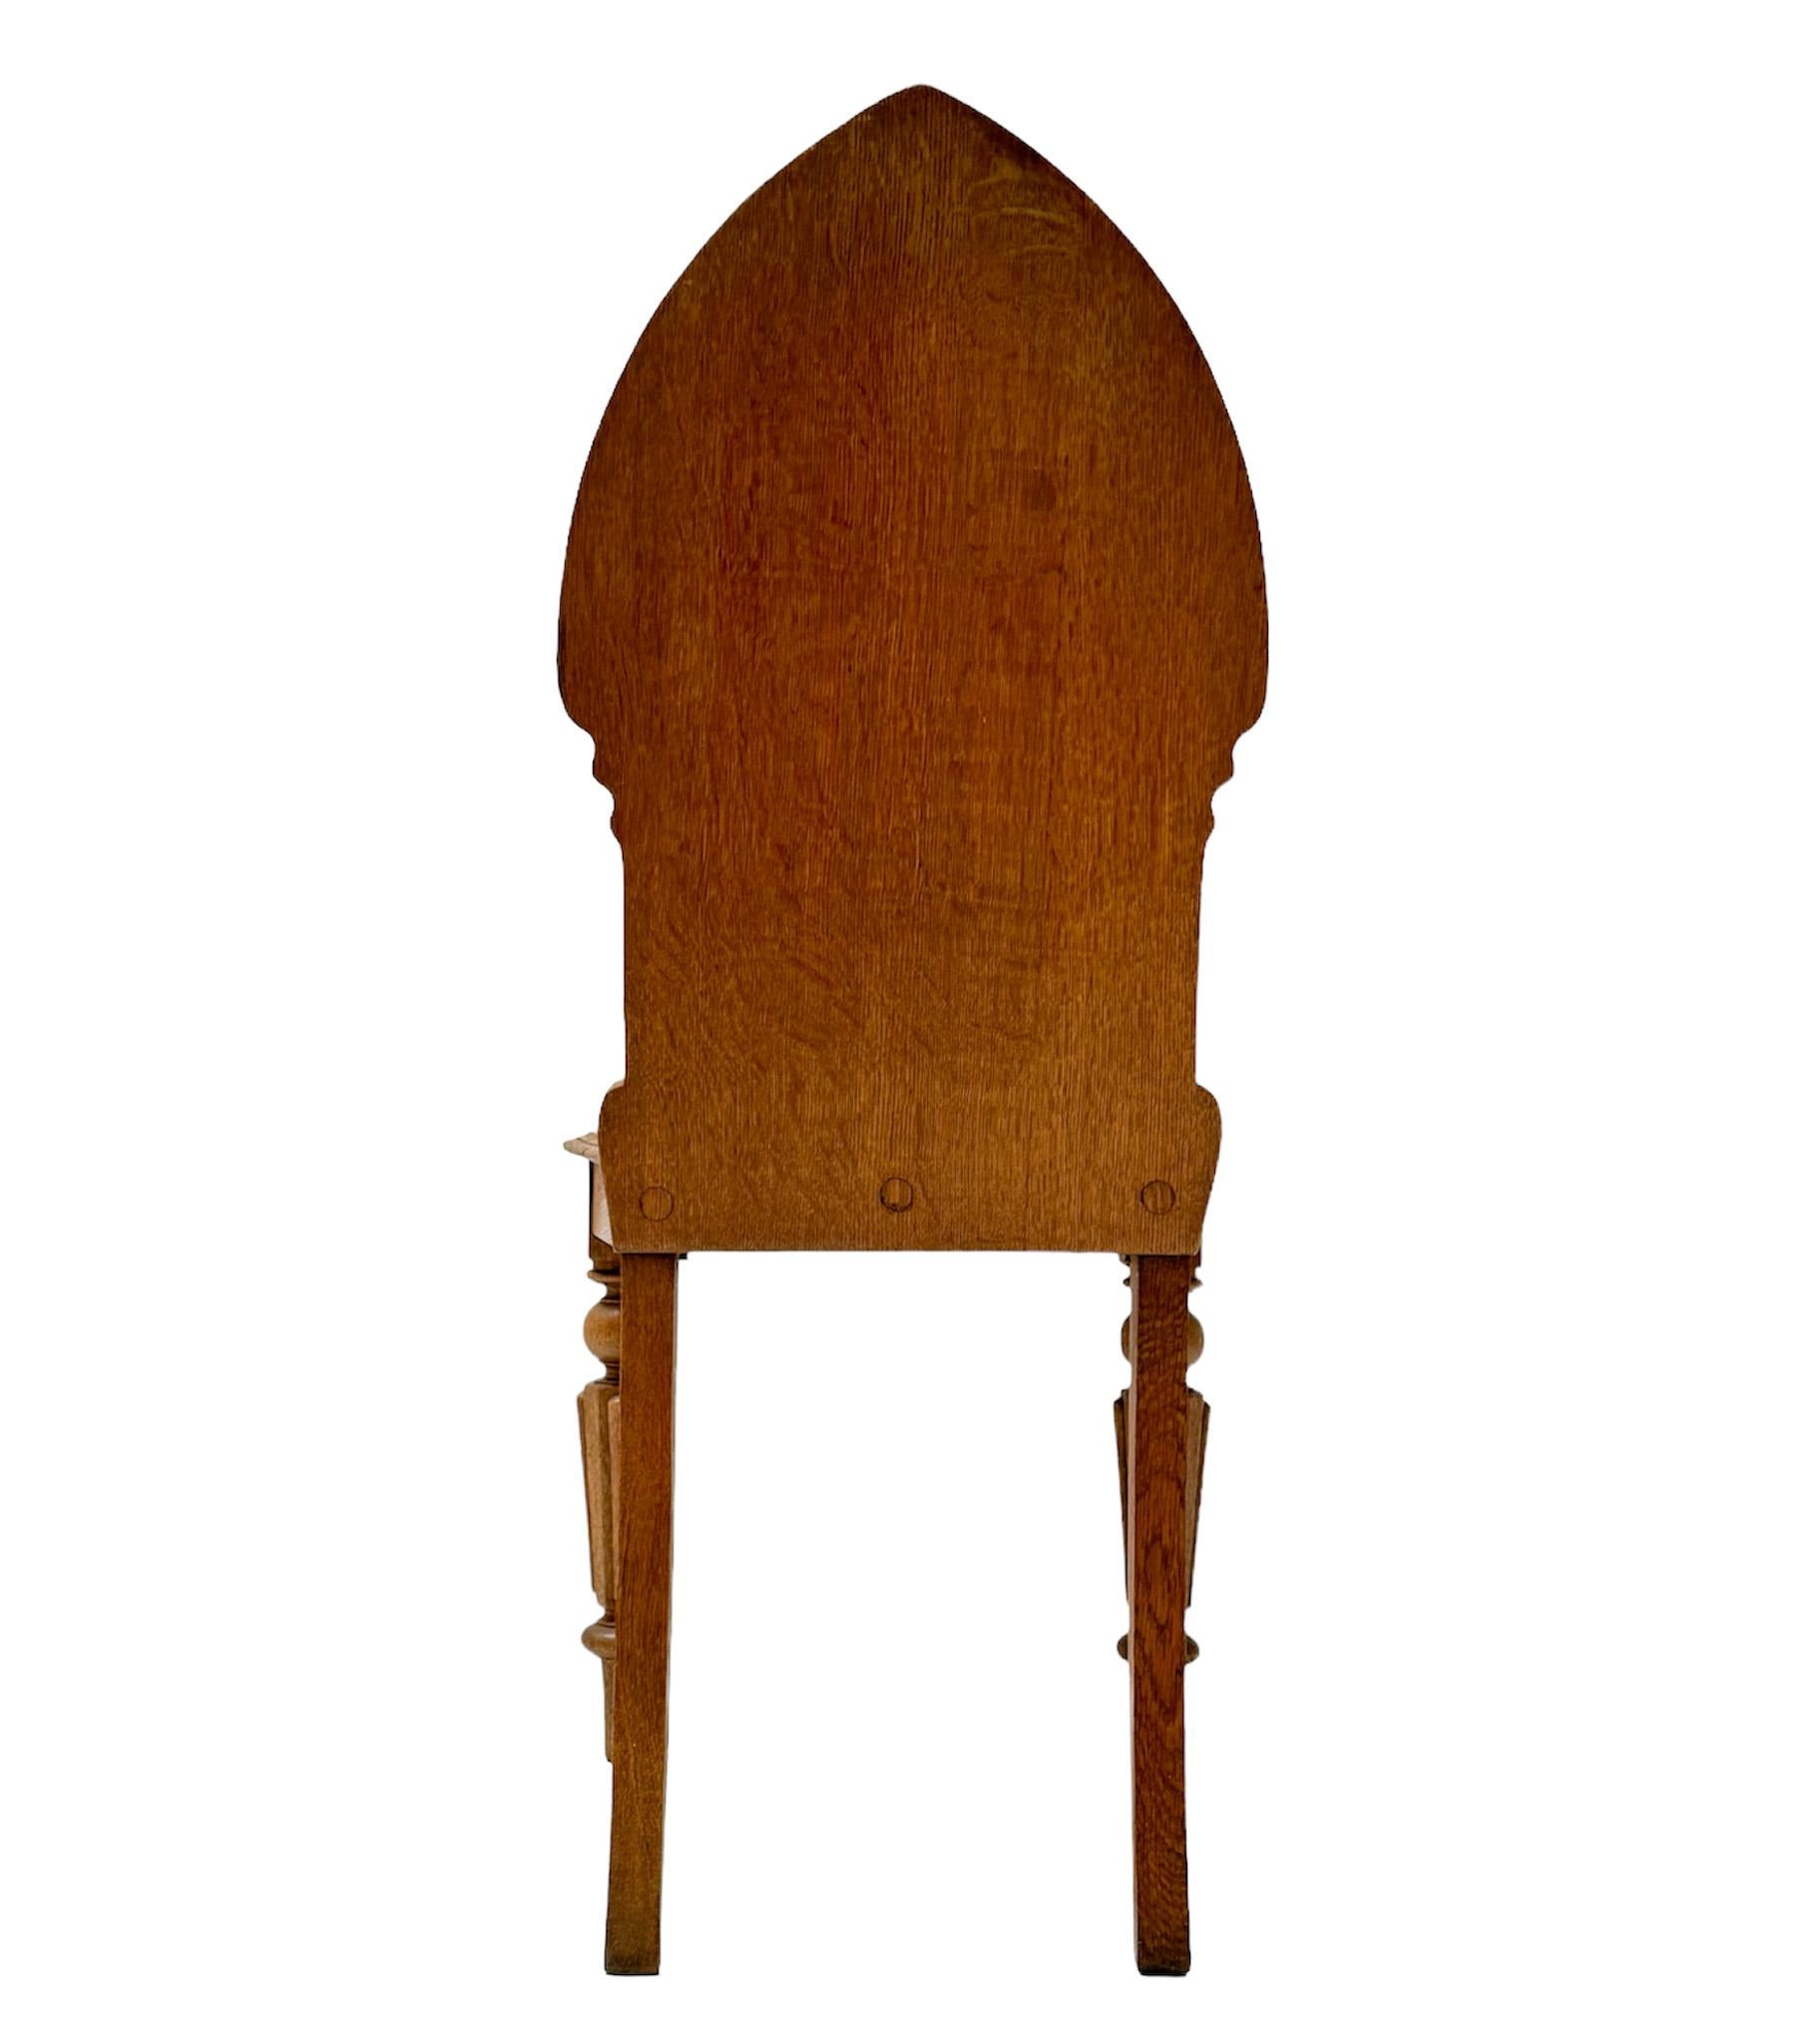 Superbe et rare chaise d'appoint néo-gothique.
Un design néerlandais saisissant des années 1930.
Cadre en chêne massif avec éléments originaux sculptés à la main.
Cette magnifique chaise d'appoint de style néo-gothique est en très bon état